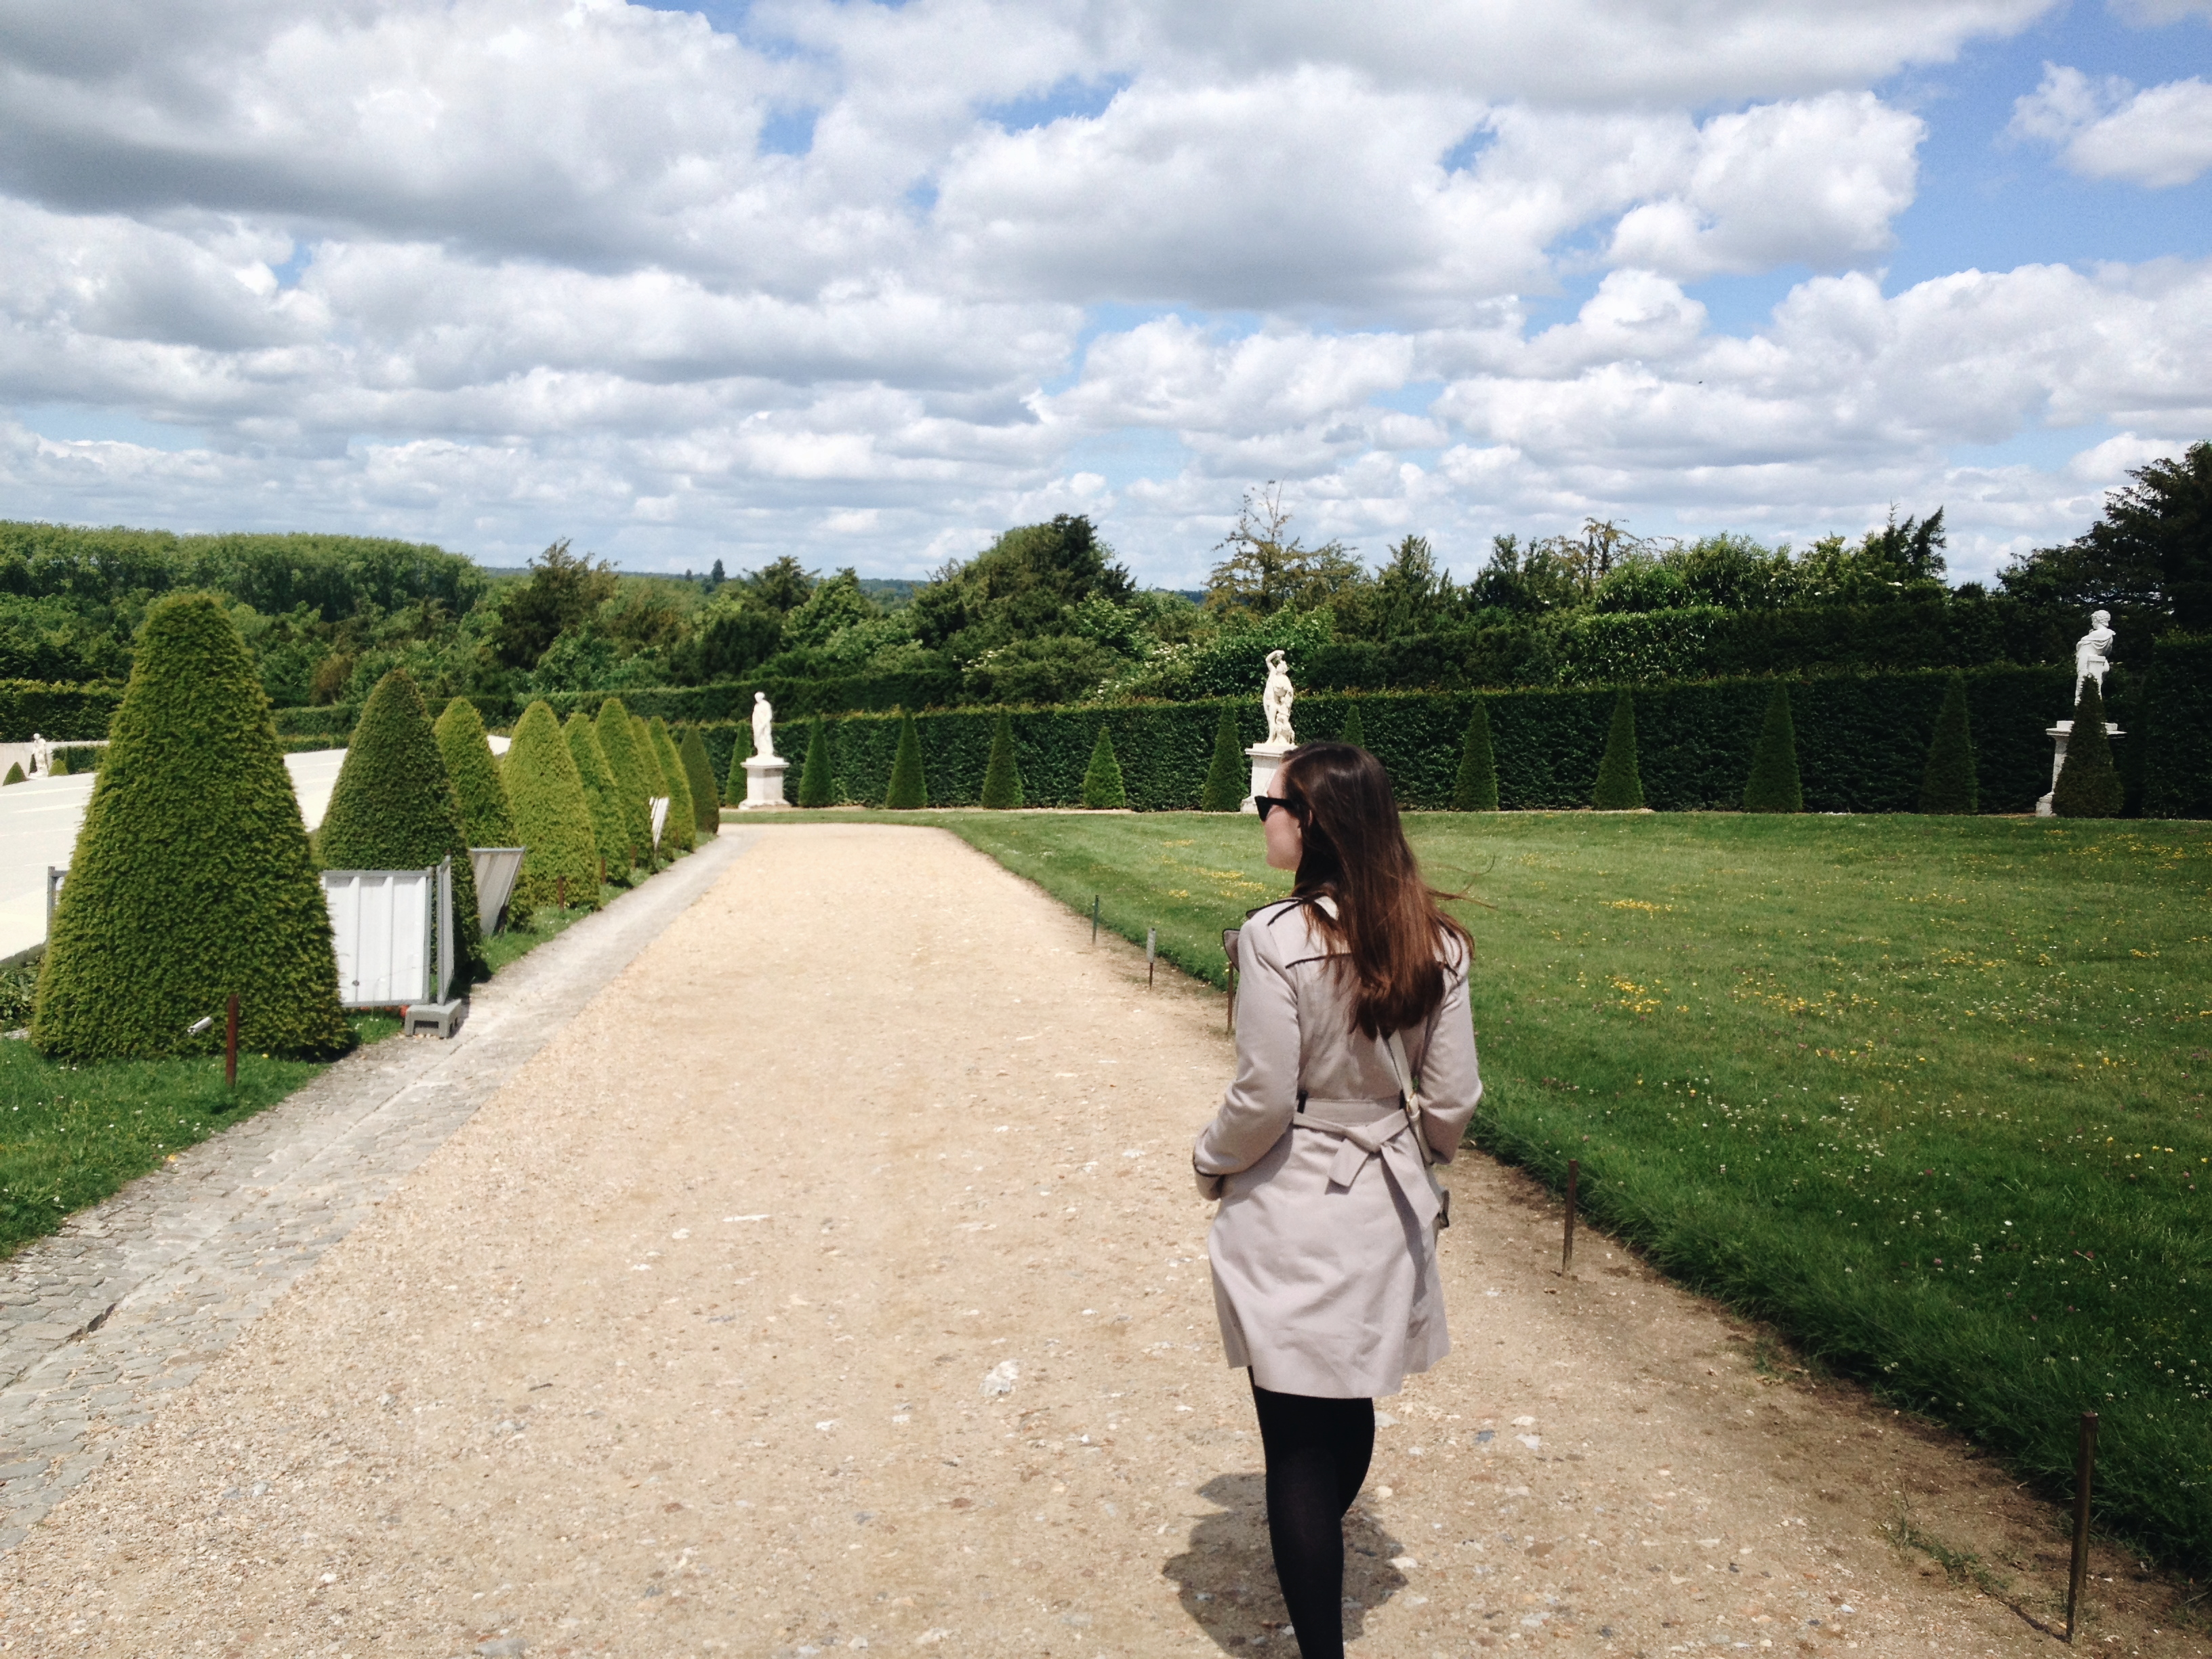 Alyssa walks through gardens at Versailles